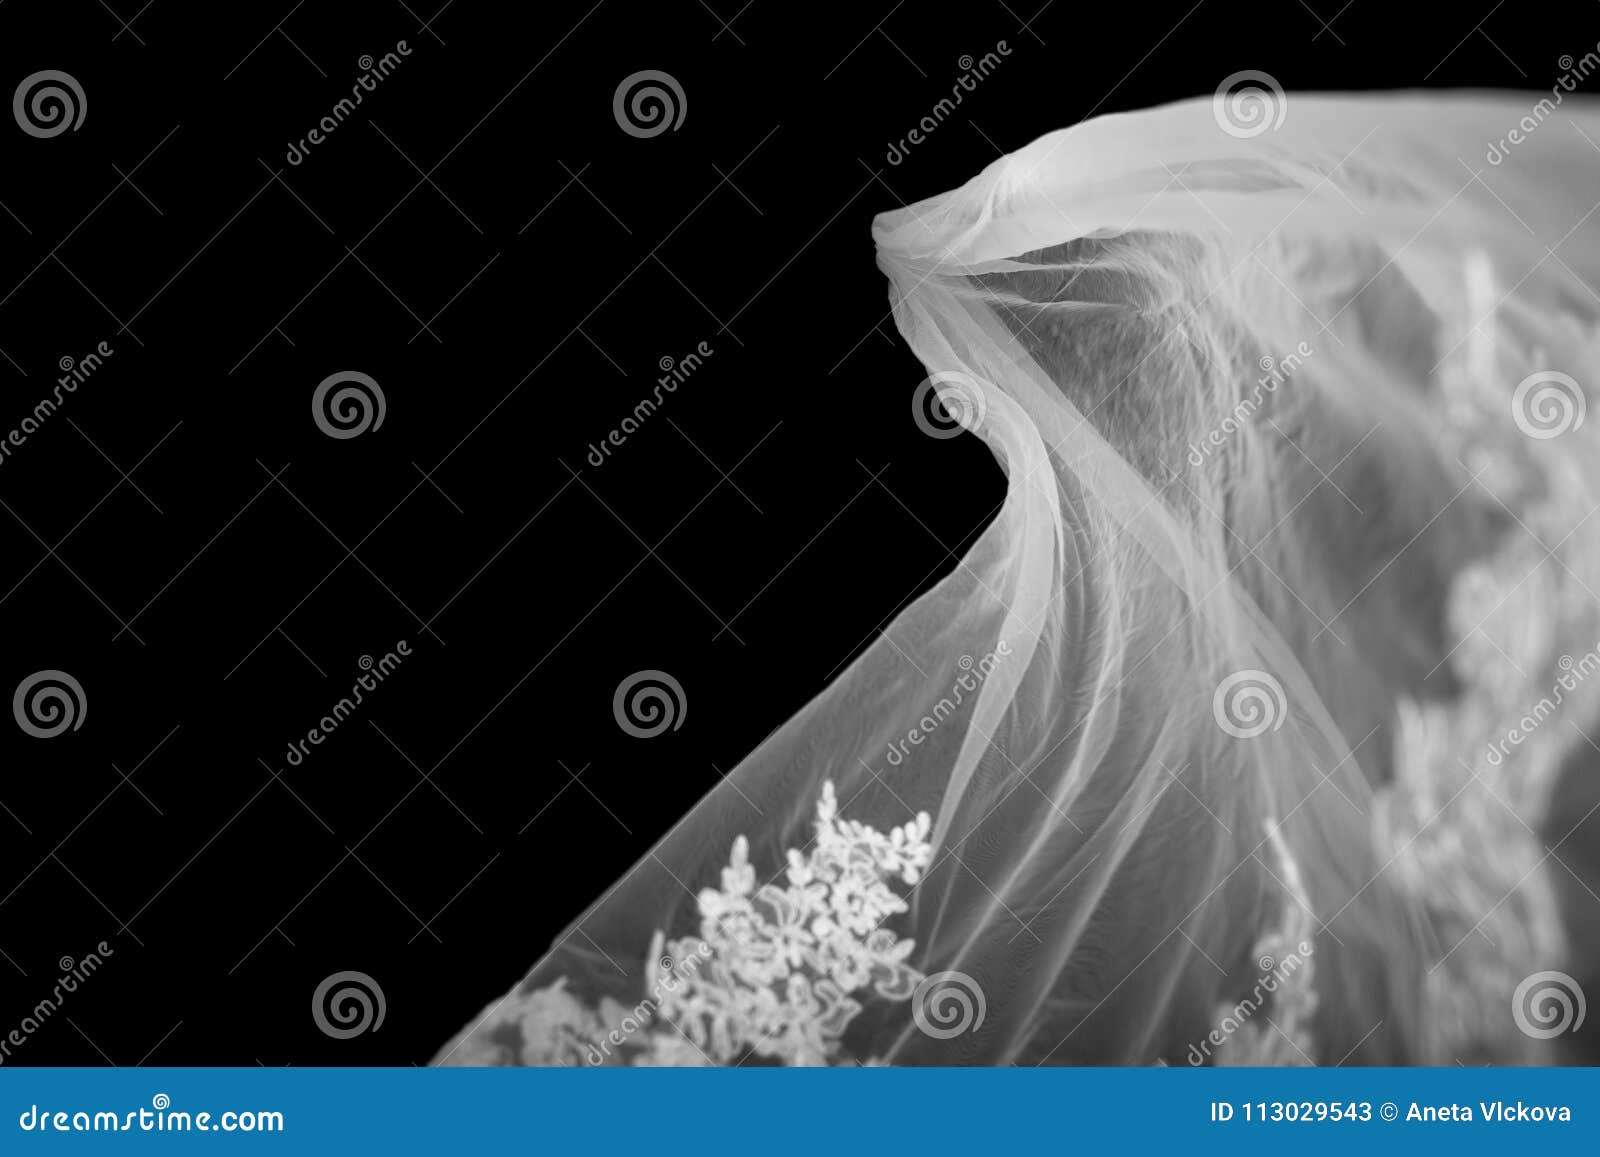 Bridal Veil on Black Background Stock Image - Image of background ...